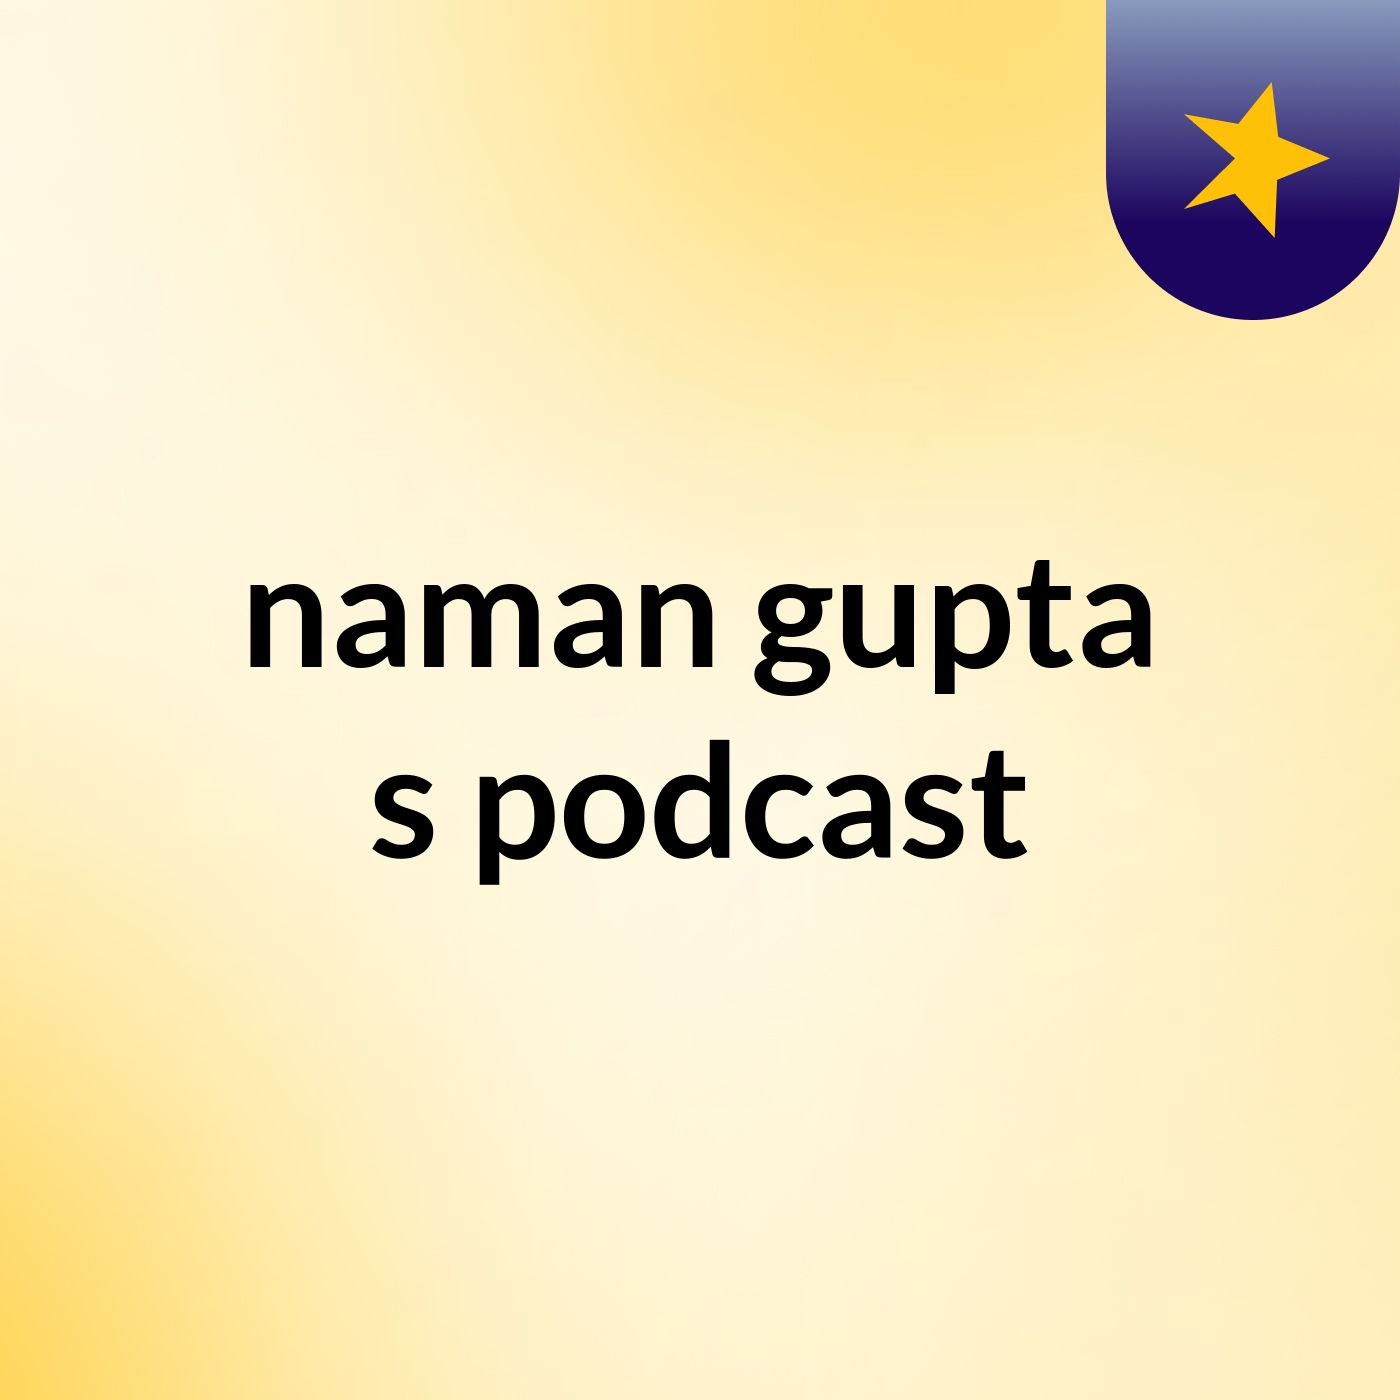 naman gupta's podcast